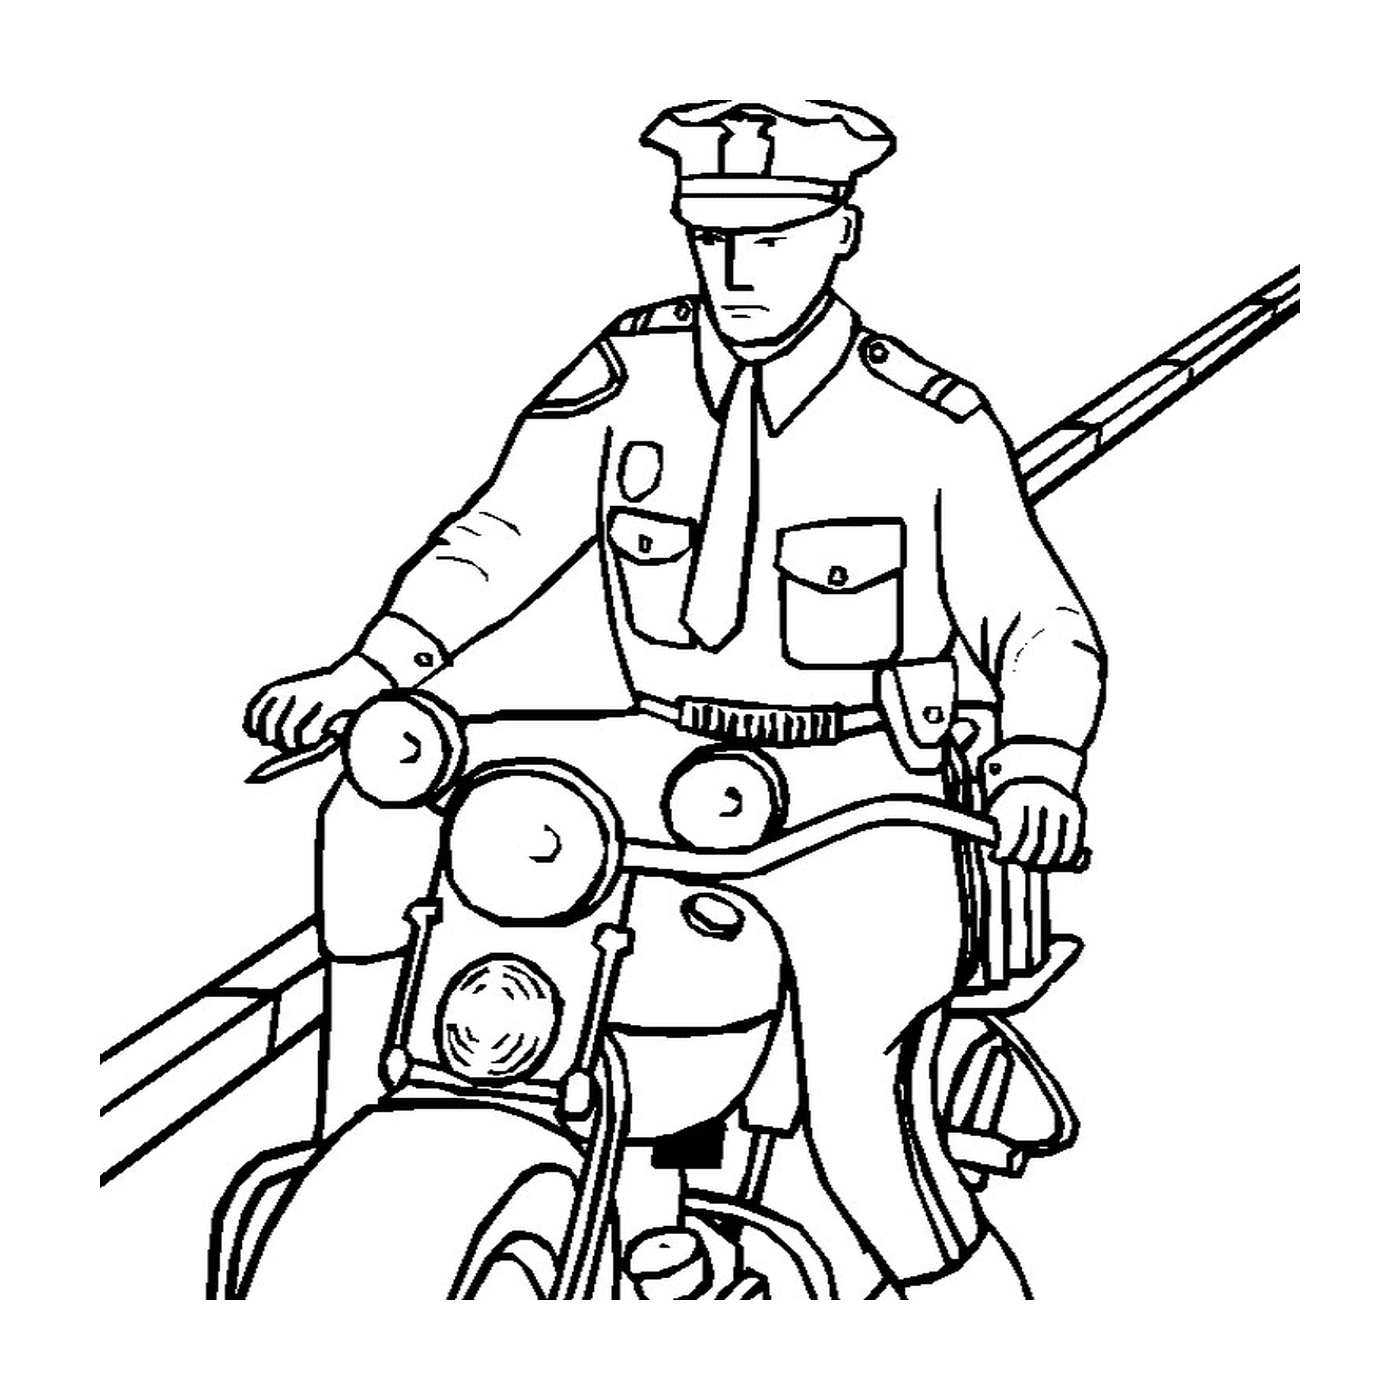   policier conduisant moto 